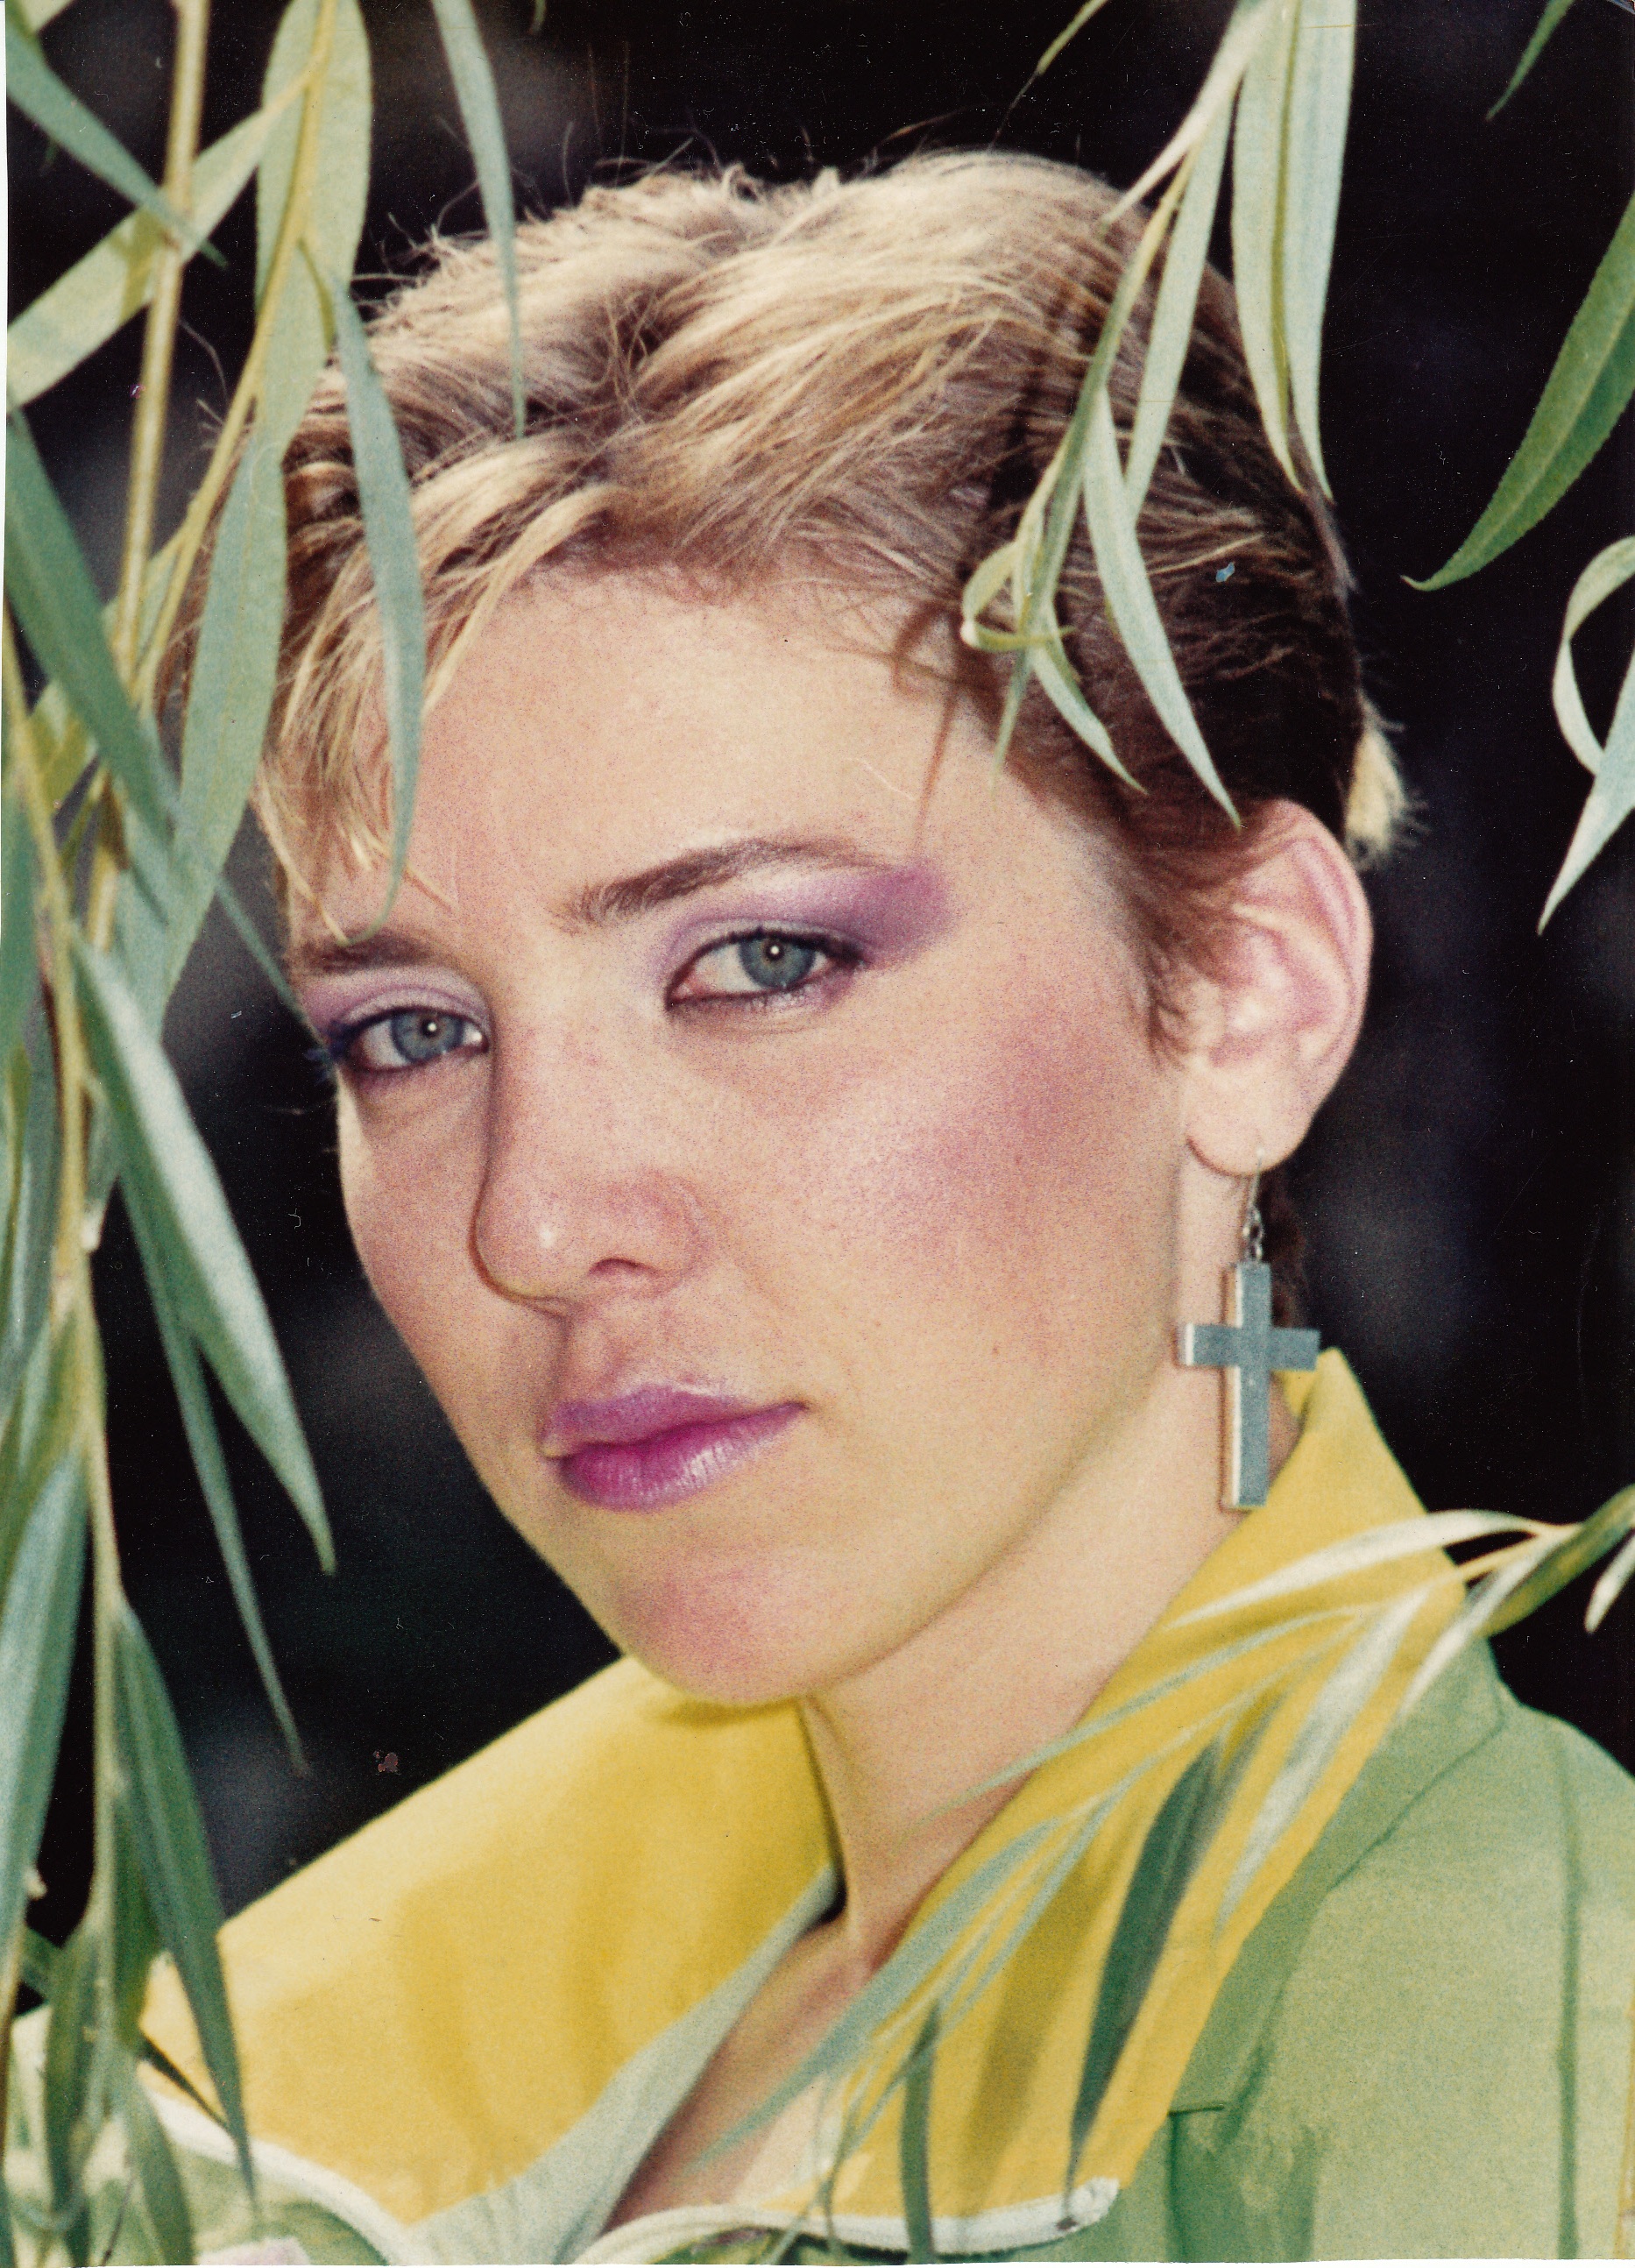 "Cred în tine", "Dansul" şi "Miracol Infinit" au fost trei mari succese lansate de Silvia Dumitrescu în 1989